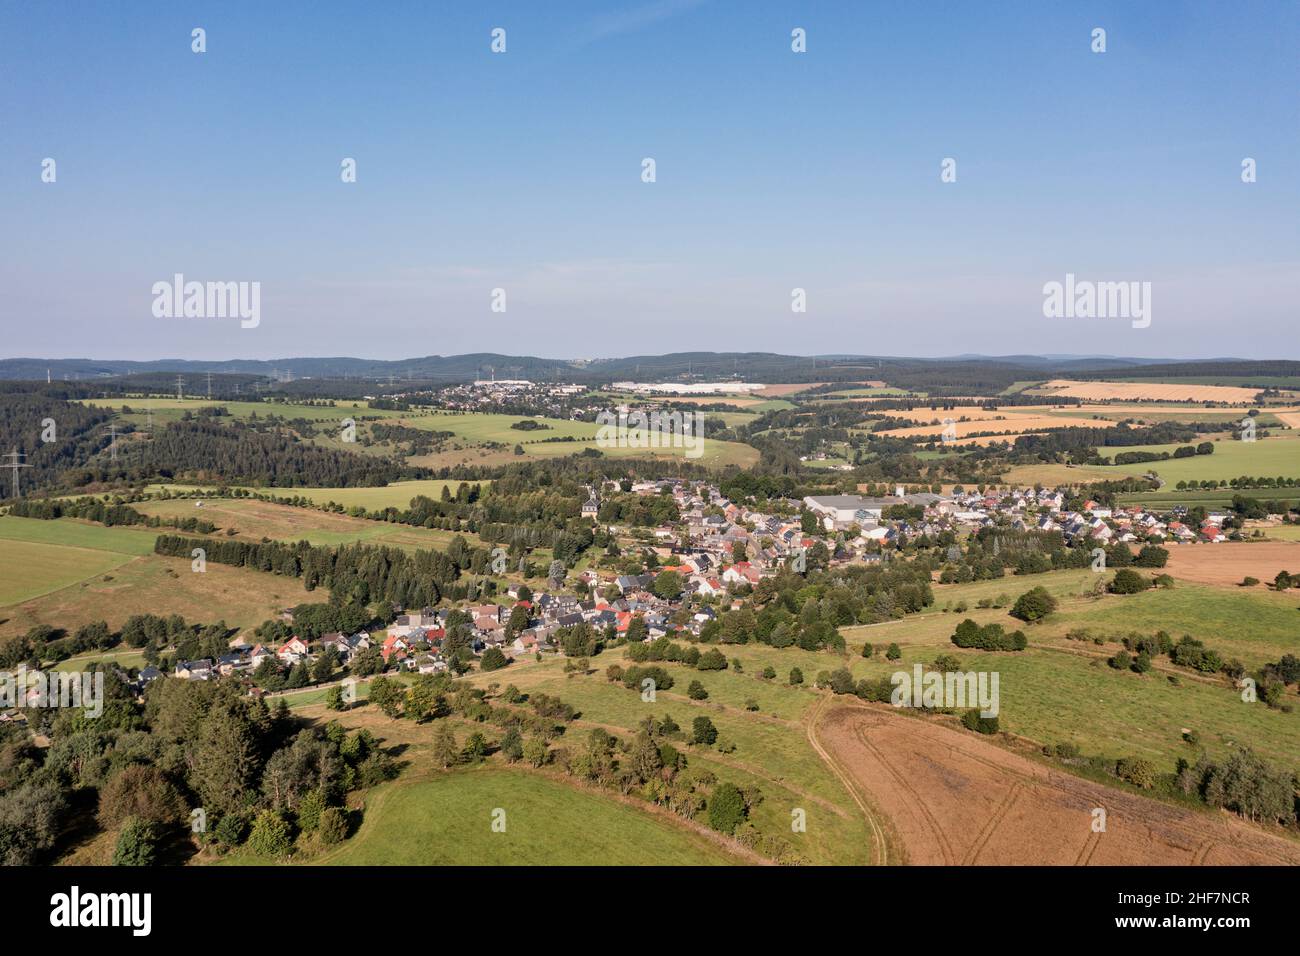 Allemagne, Thuringe, Großbreitenbach (en arrière-plan), Böhlen, paysage, champs, plateau,vue d'ensemble, vue aérienne Banque D'Images